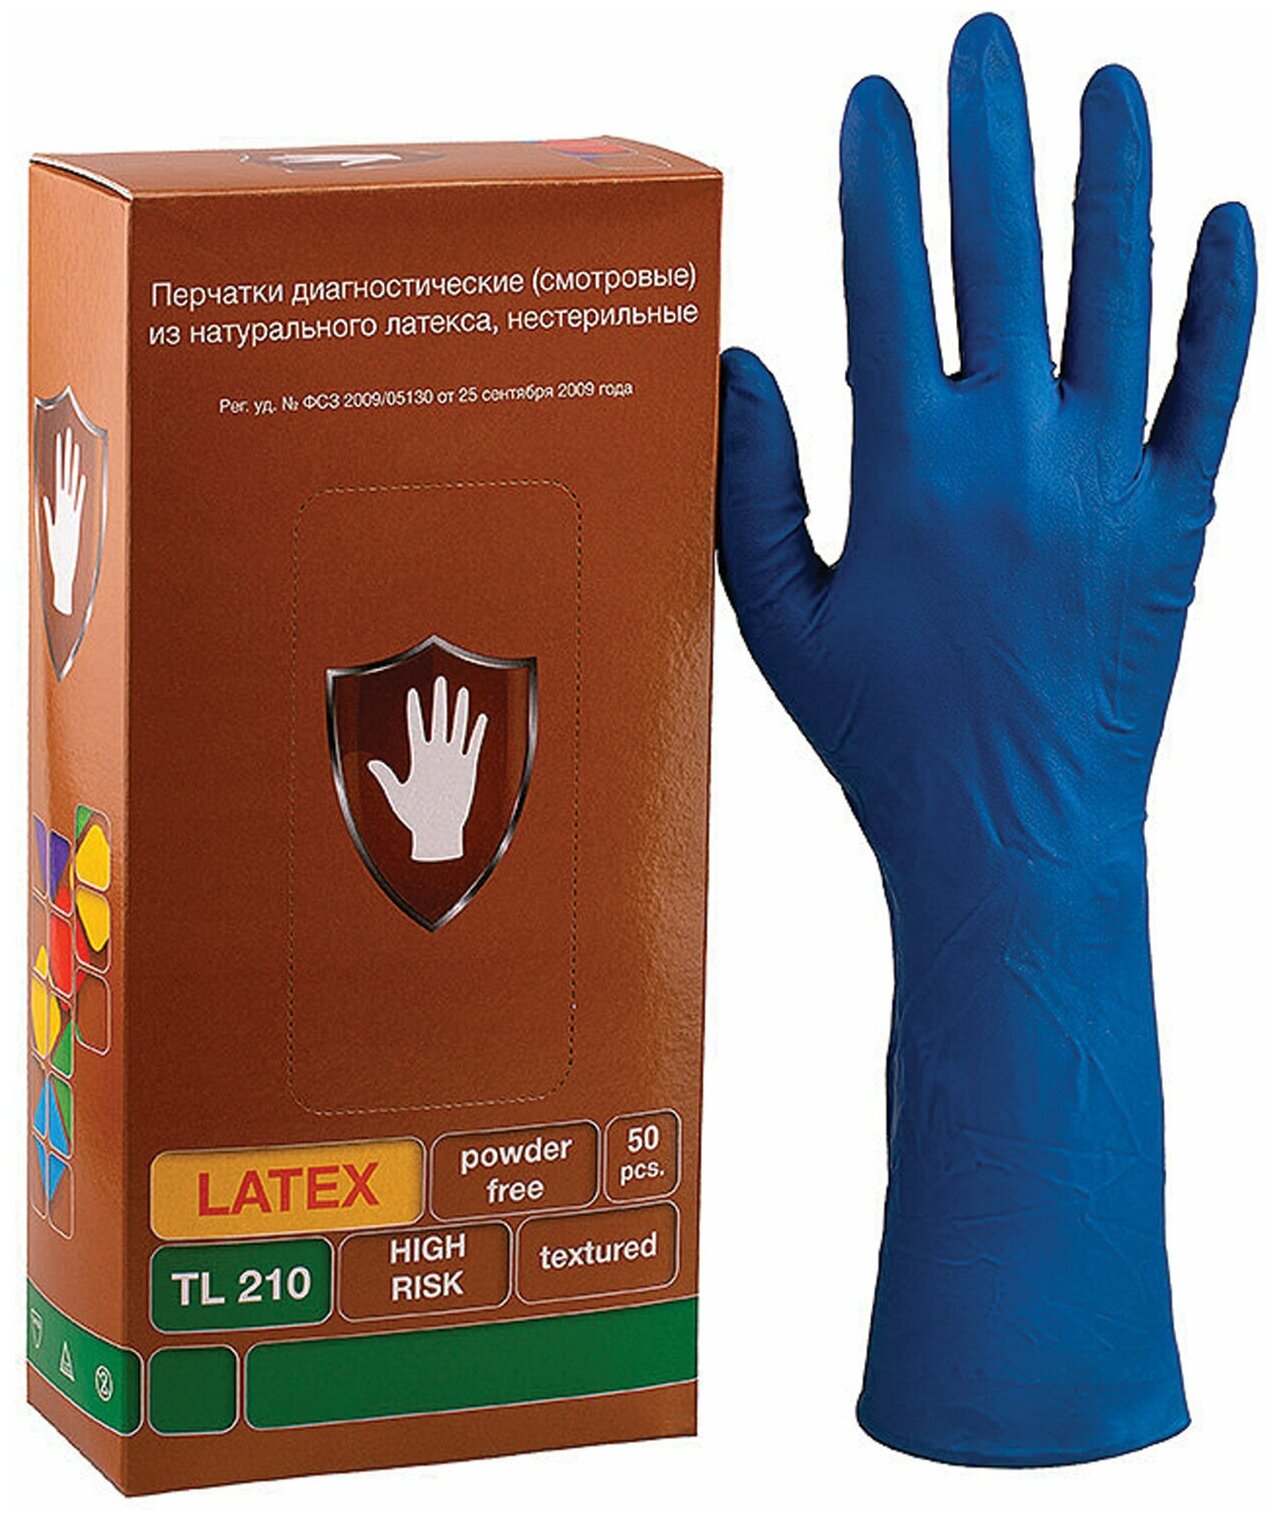 Перчатки латексные смотровые 25 пар (50 шт.), размер M (средний), синие, SAFE&CARE High Risk DL/TL210 В комплекте: 1шт.